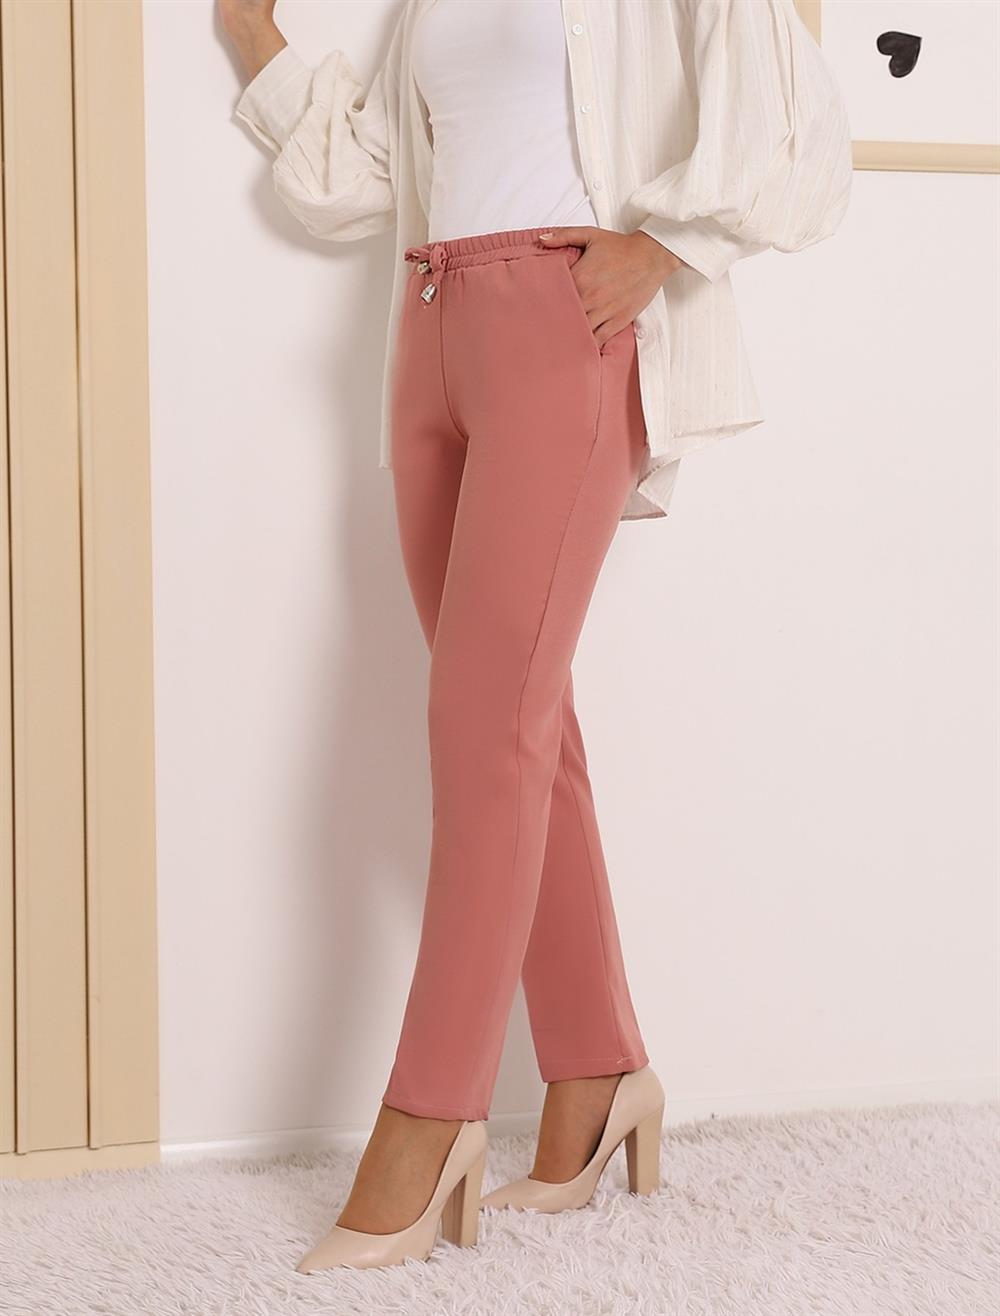 Beli Lastikli Çift Cepli Bağcık Detaylı Pantolon -Gül Kurusu - 286-0785-R27  | İHRACAT Marka Pantolon Modelleri | Kadın Tesettür Giyim - KaliteMall.com